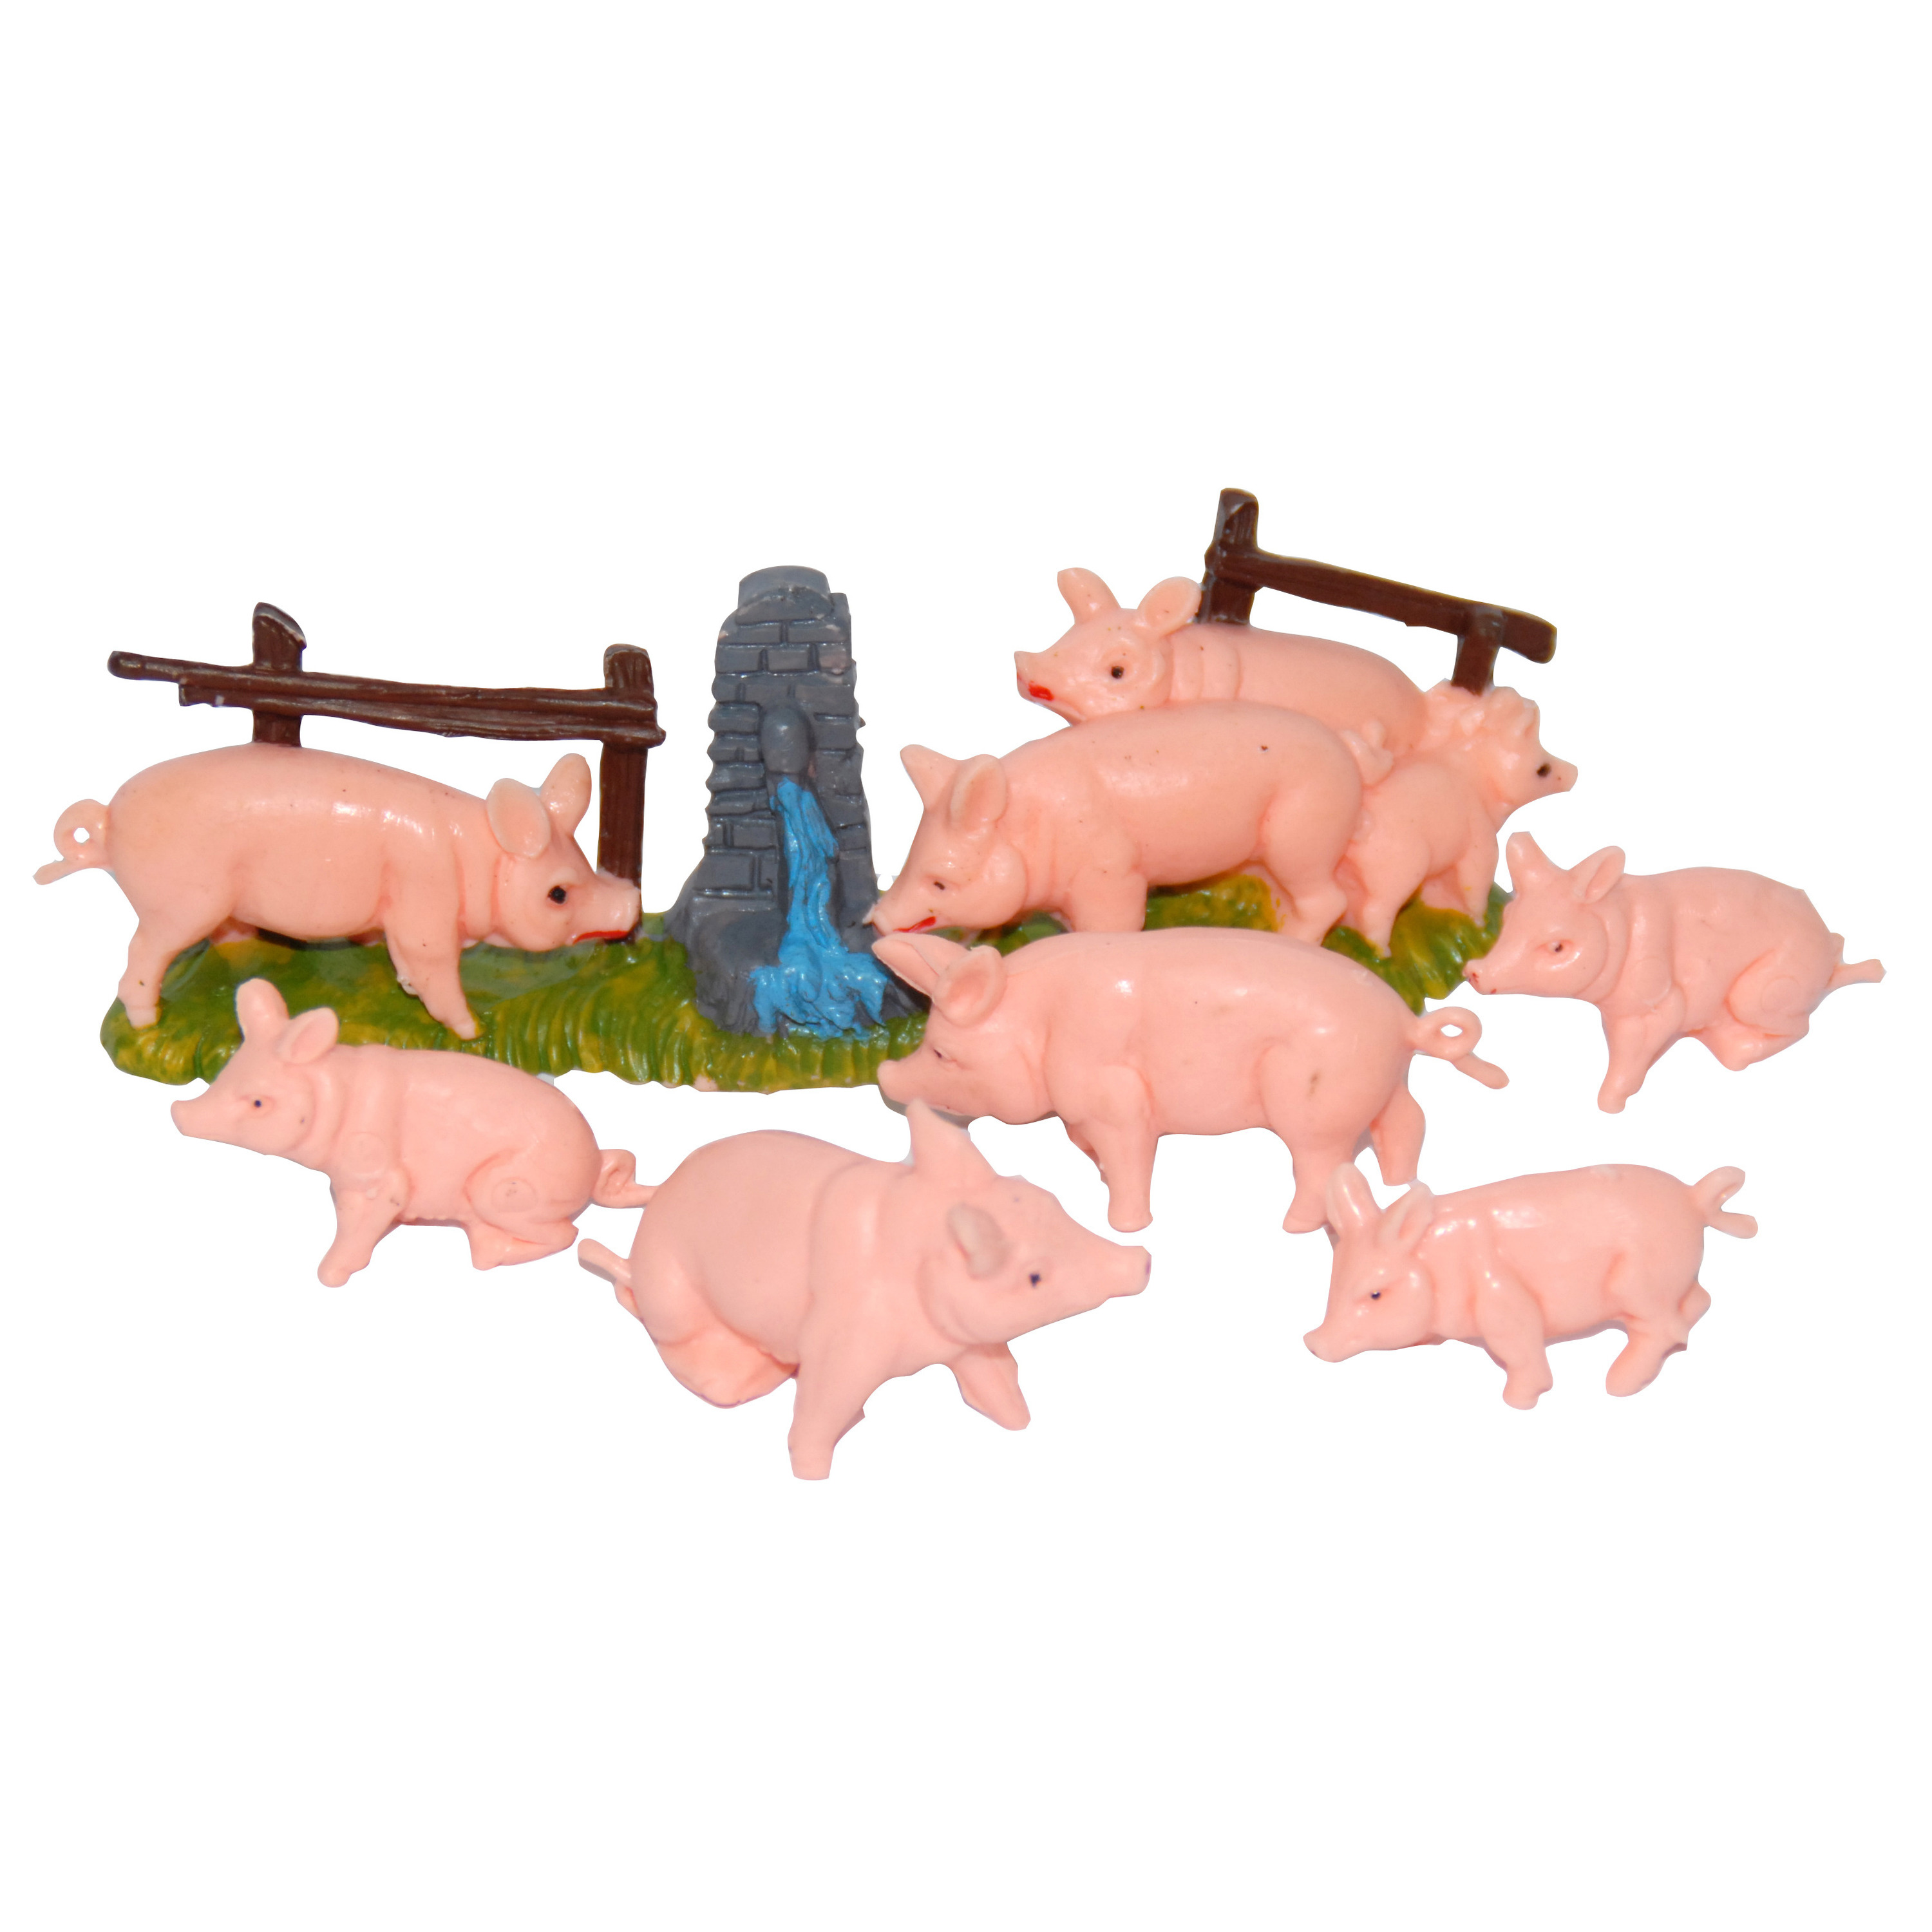 Afbeelding 8x Varkens / biggetjes miniatuur beeldjes dierenbeeldjes door Animals Giftshop